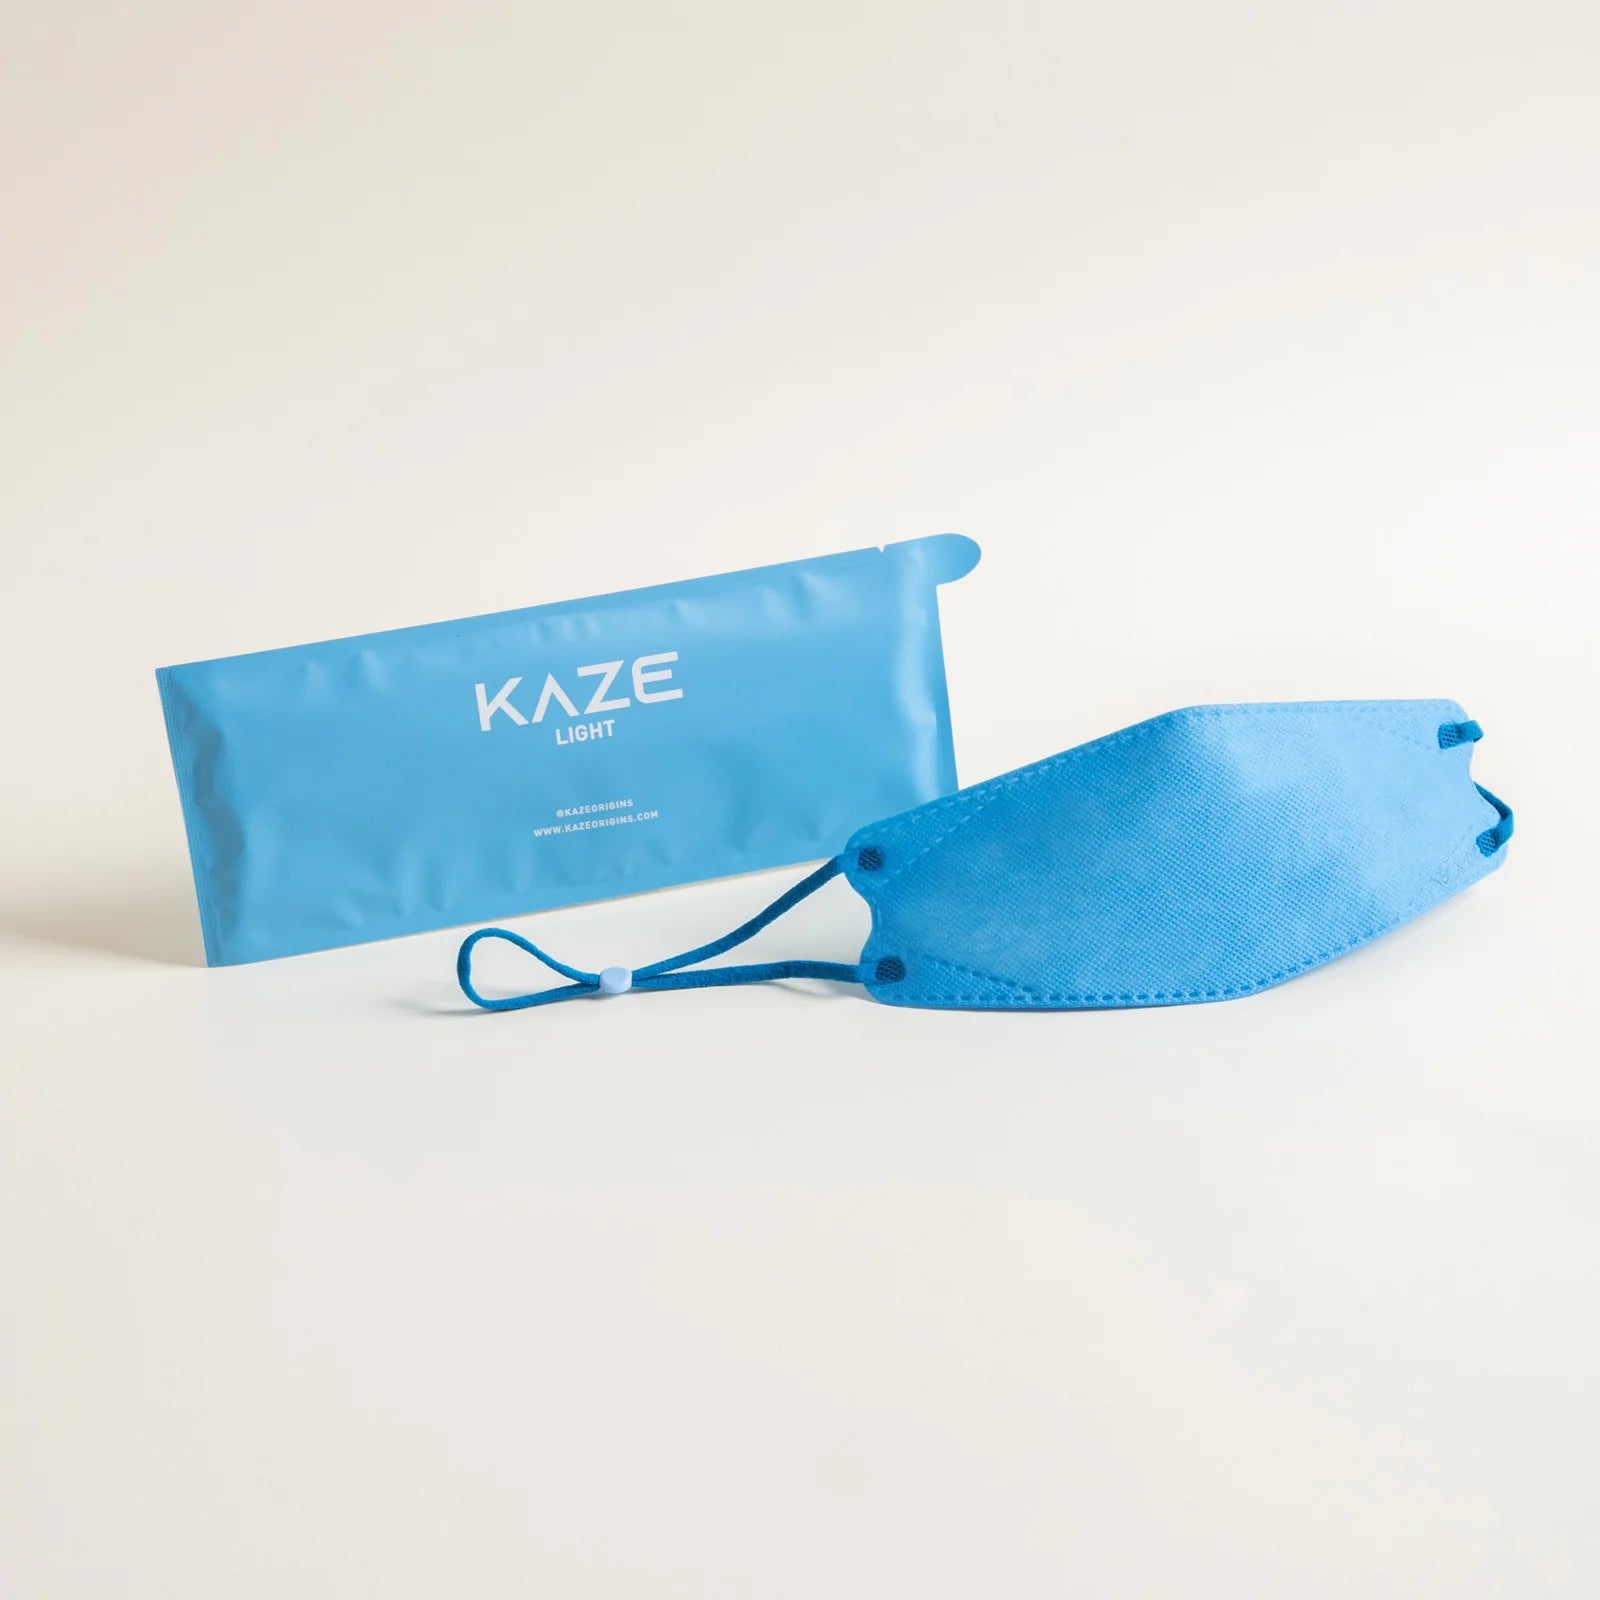 KAZE Masks- Light Aesthetic Series